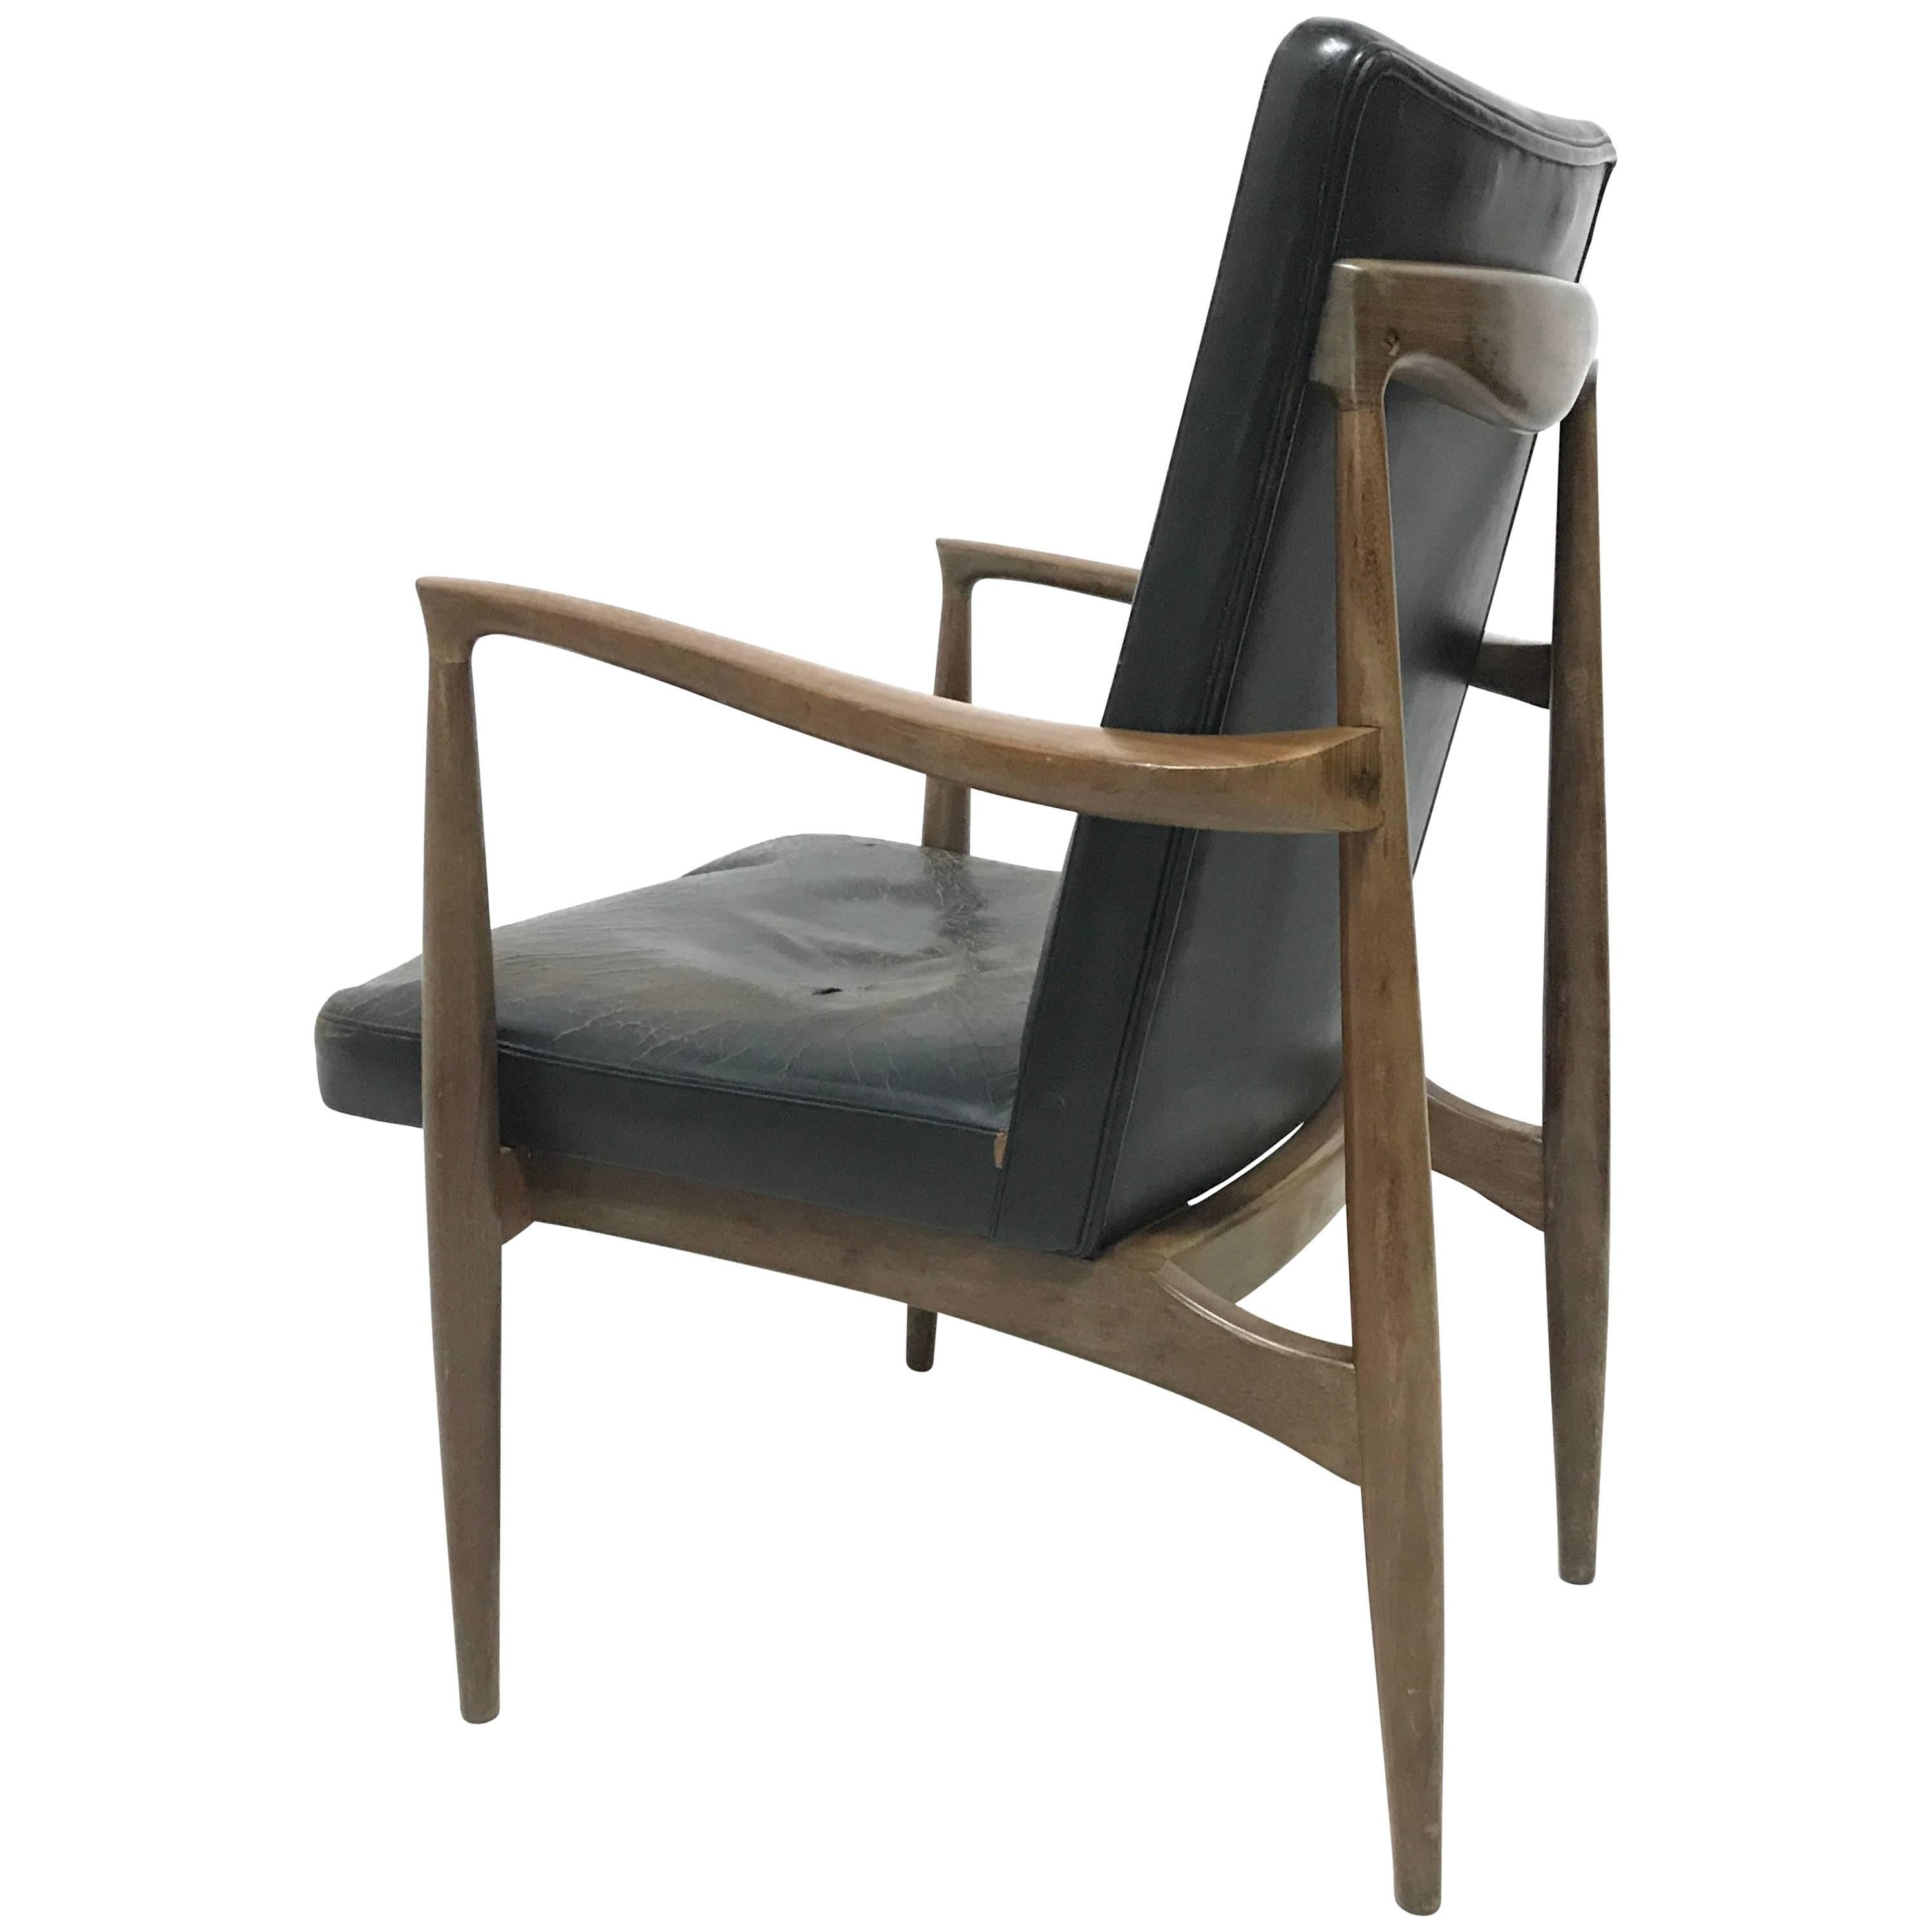 Finn Juhl Attributed, Scandinavian Teak Armchair with a Sculptural Design